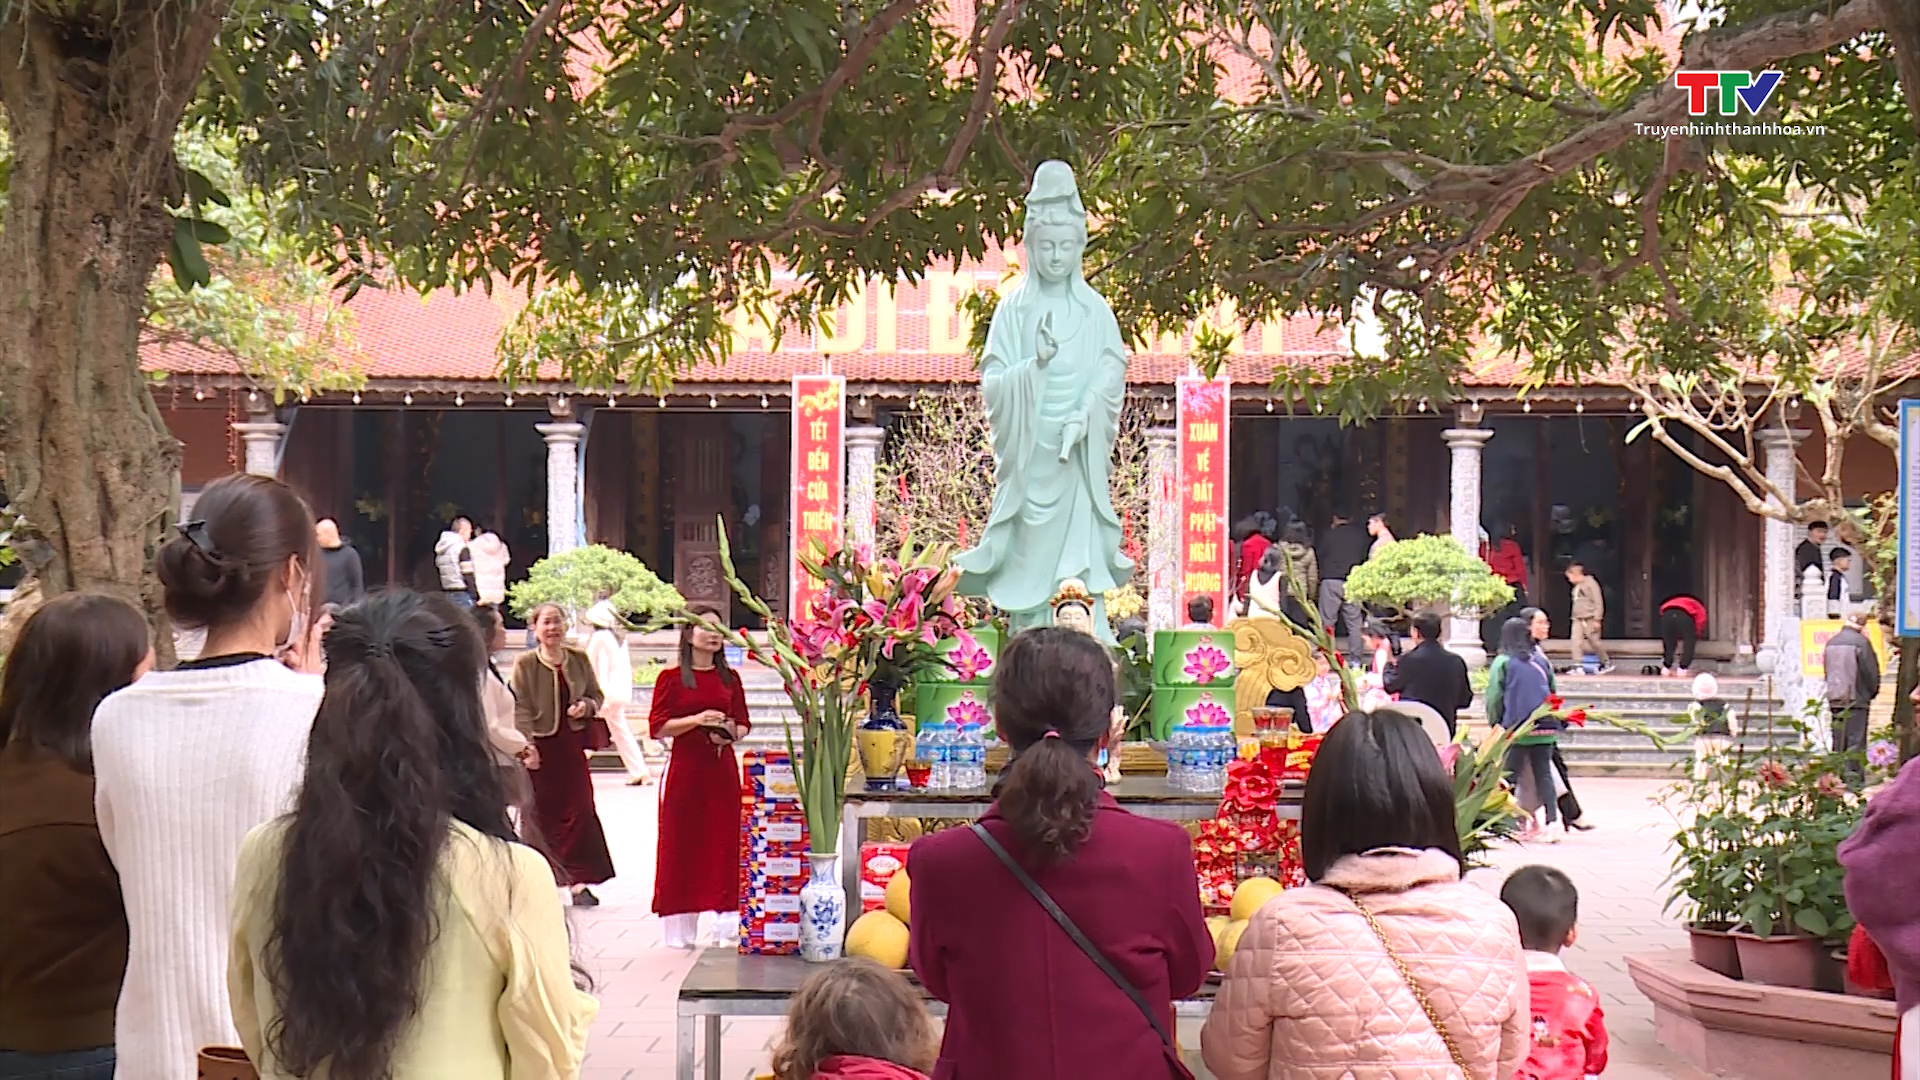 Lễ Chùa đầu năm, nét đẹp văn hóa của người Việt- Ảnh 3.